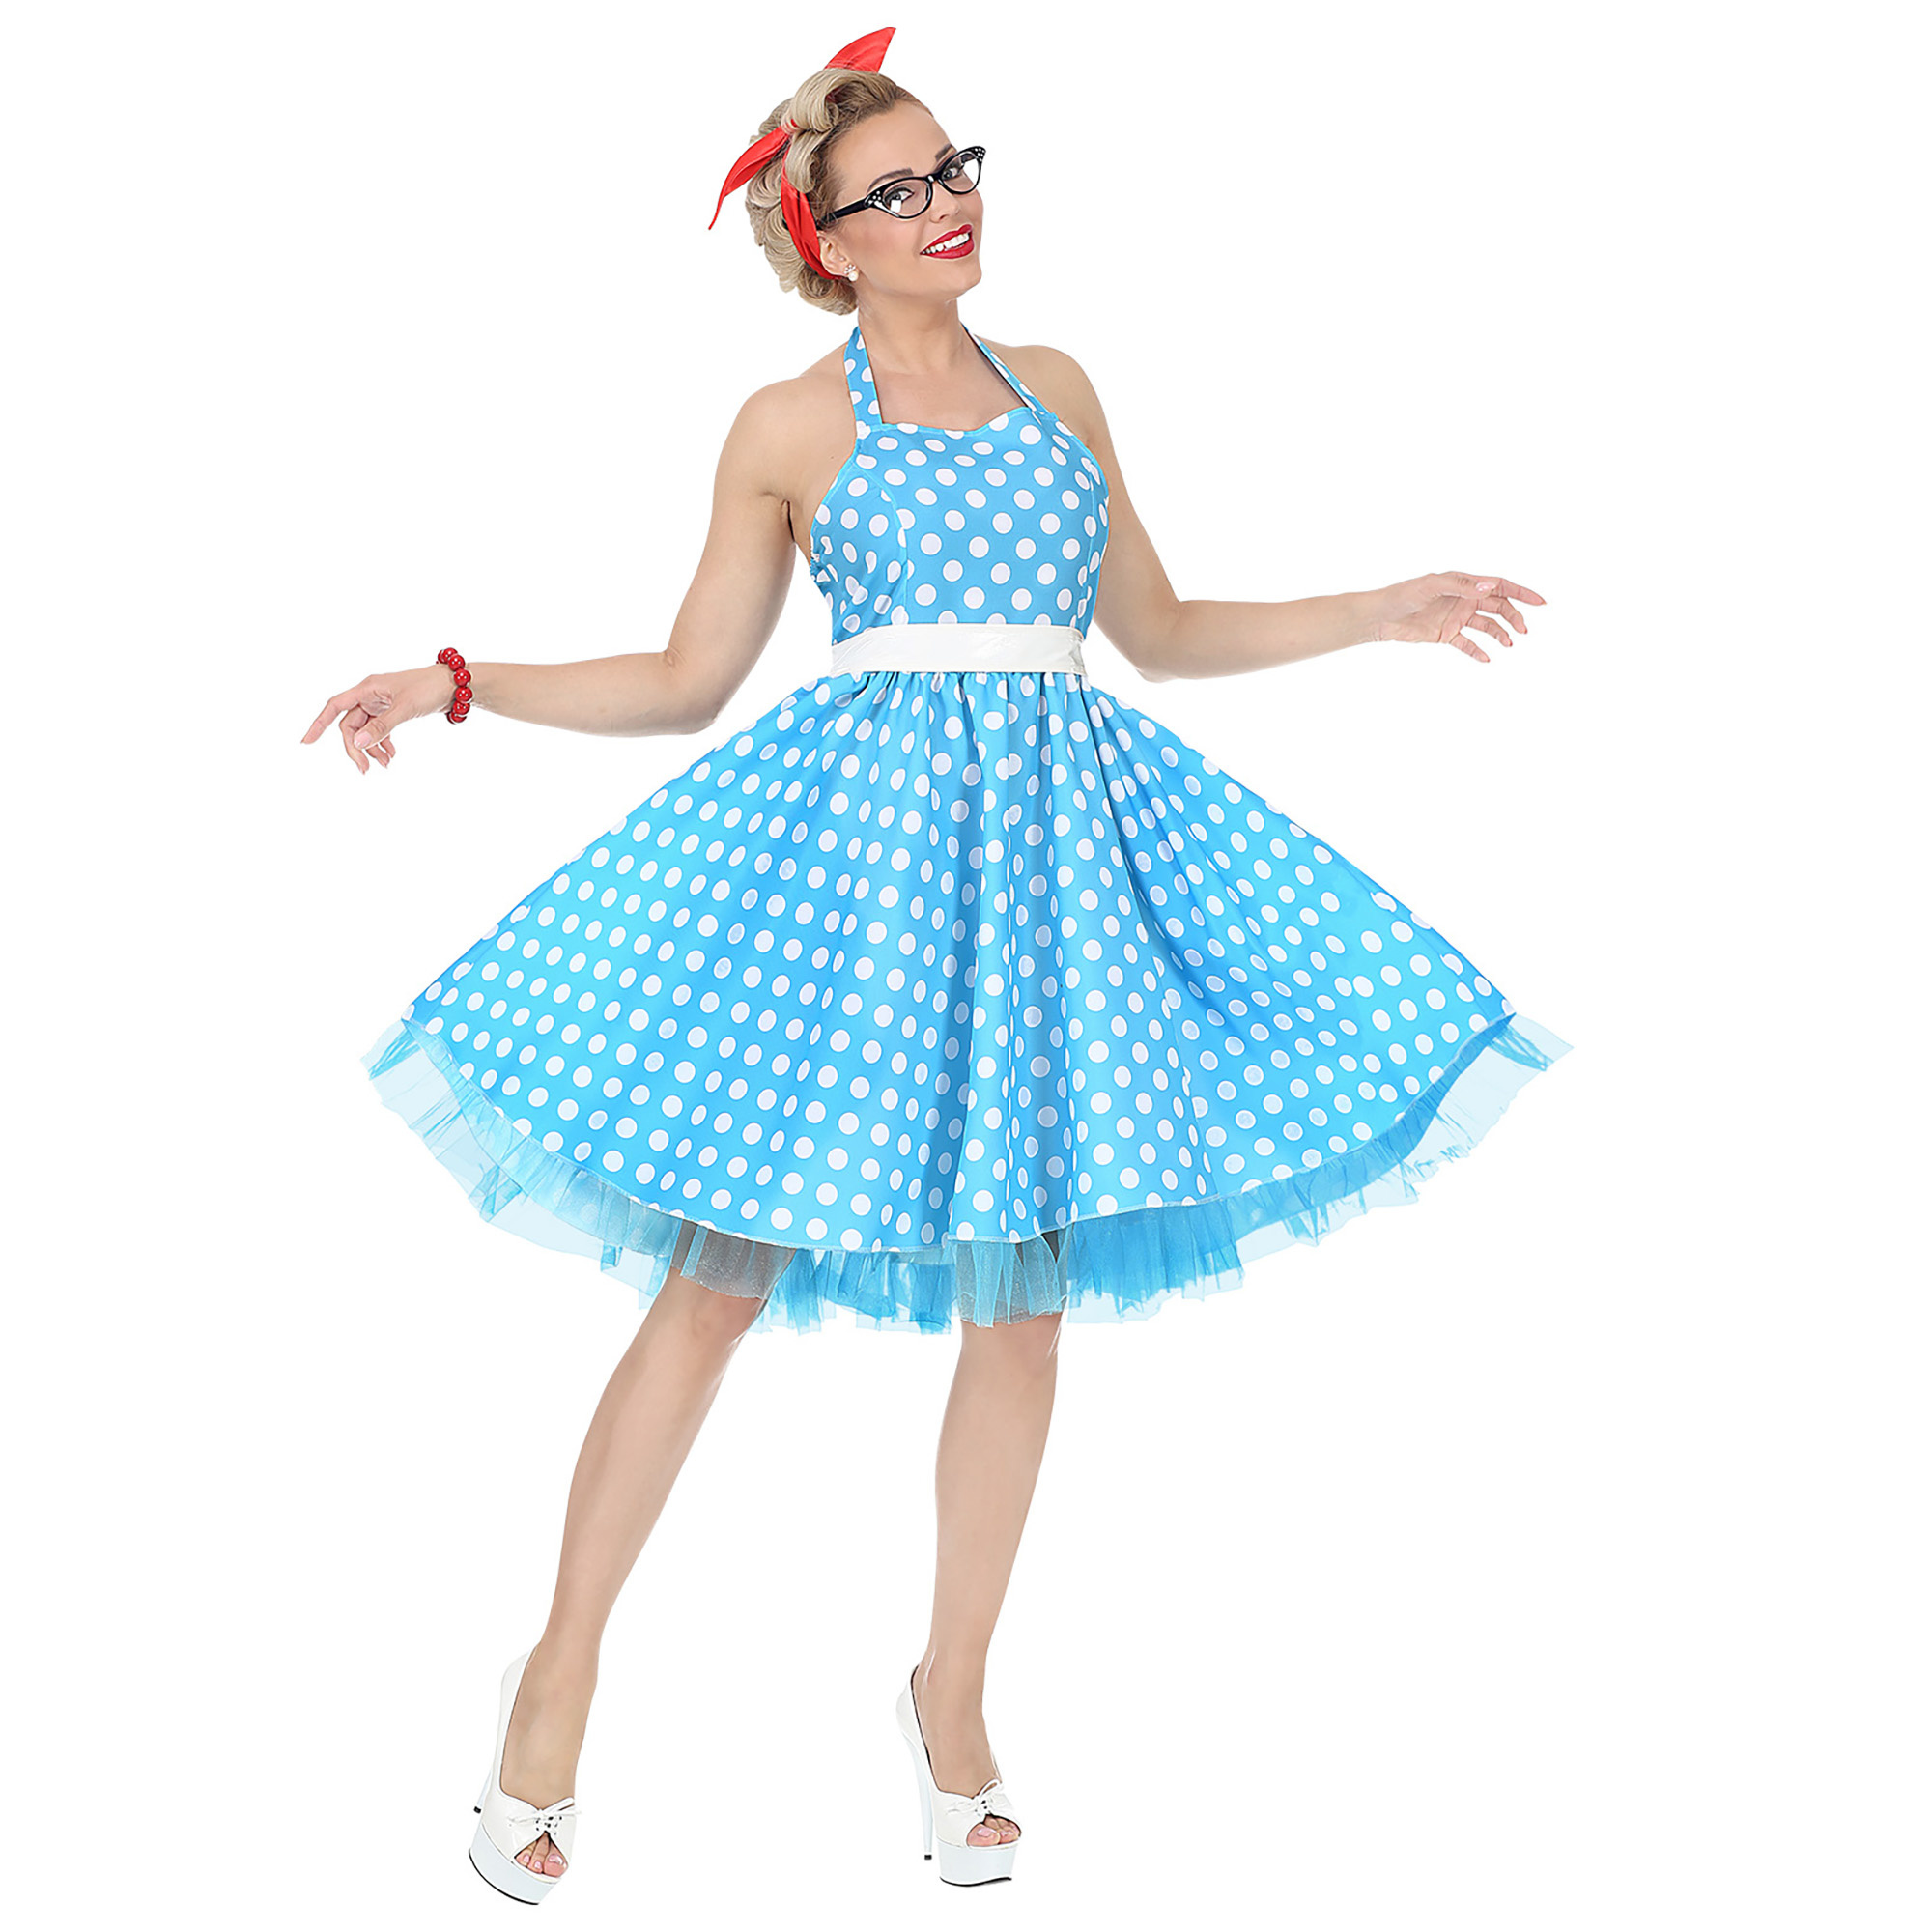 50 jurk blauw met witte stippen - e-Carnavalskleding